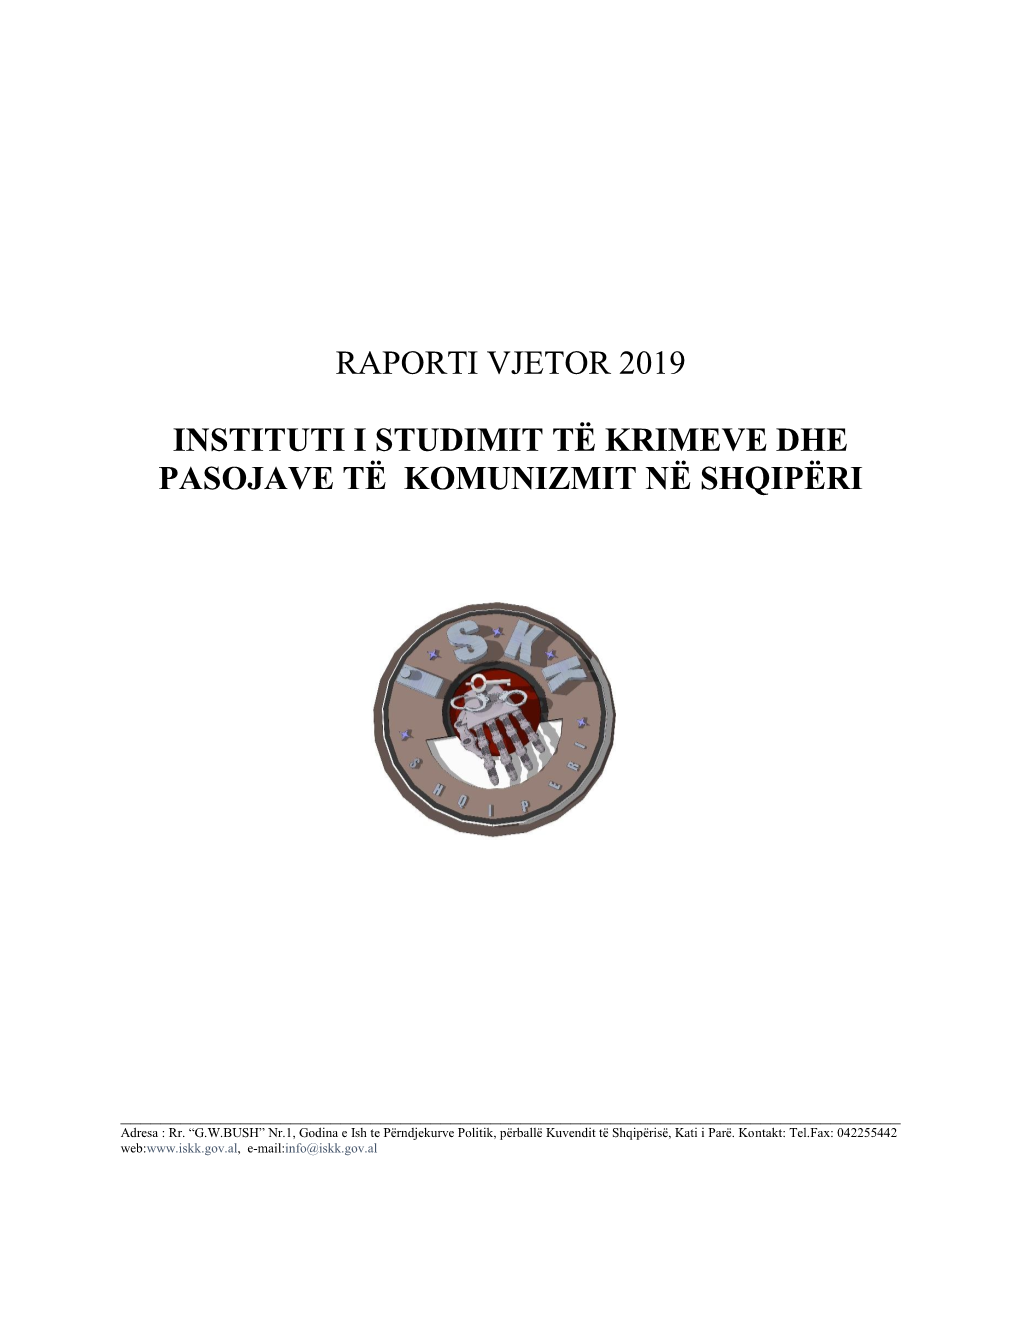 Raporti Vjetor 2019 Instituti I Studimit Të Krimeve Dhe Pasojave Të